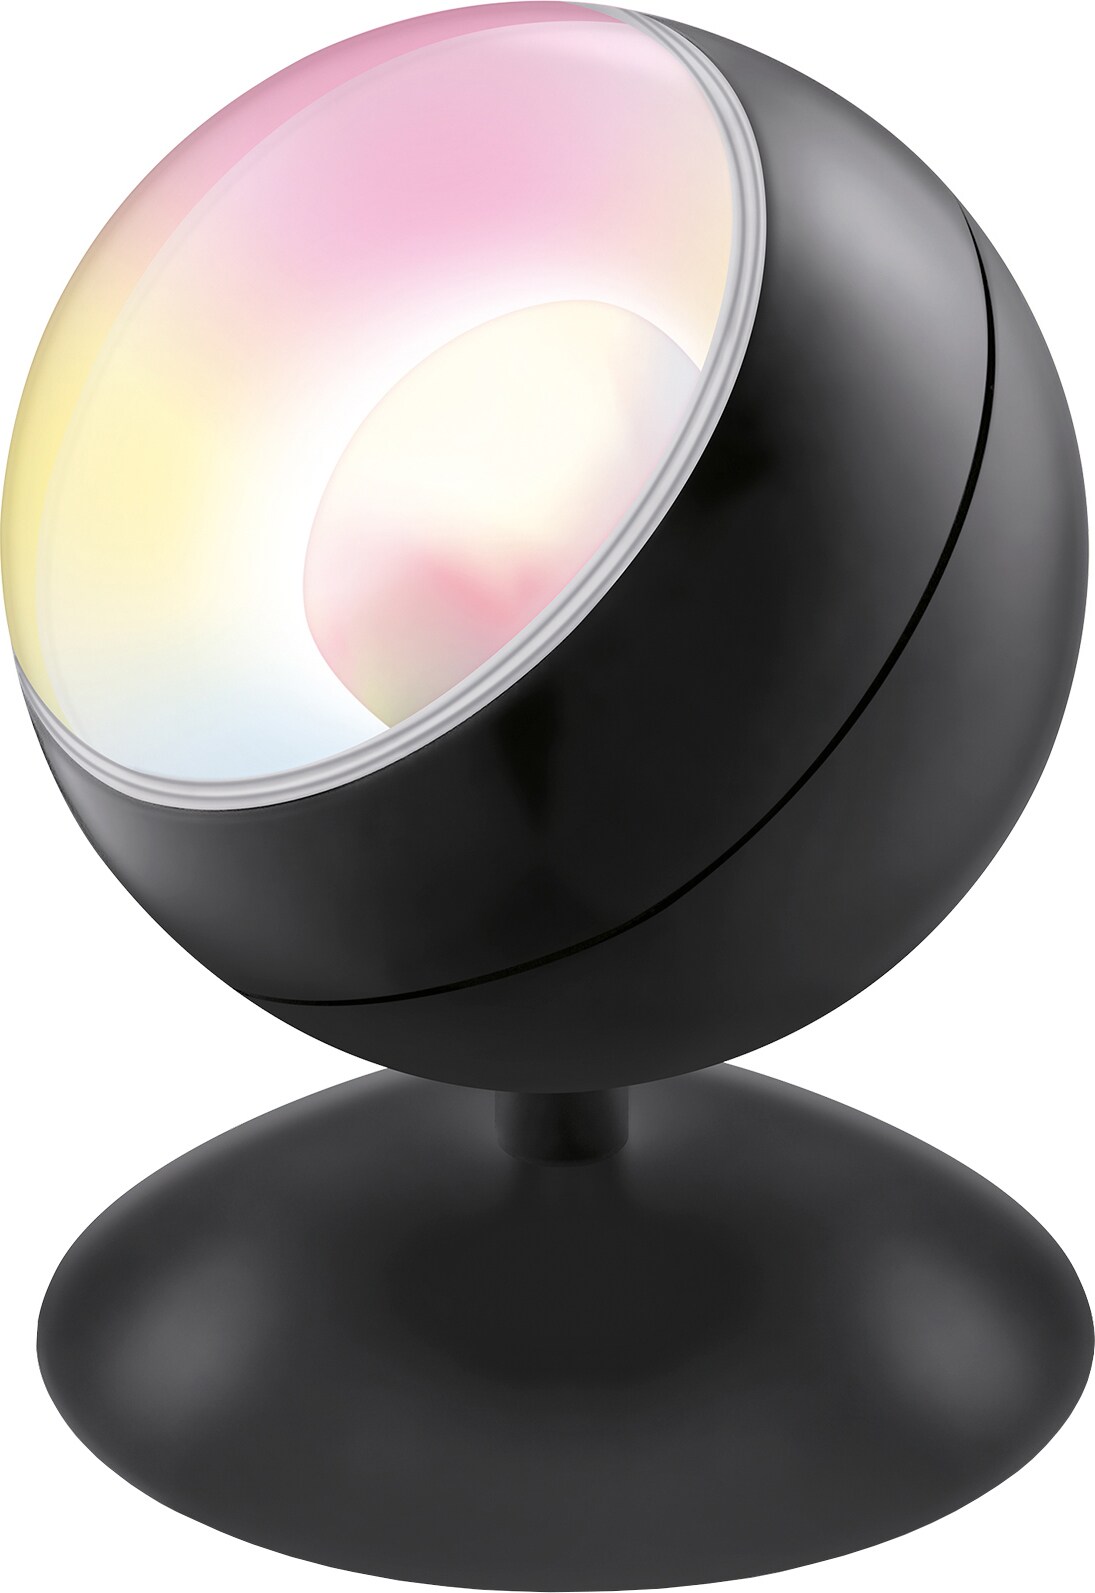 Wiz Quest portabel projektorlampa 871951426138900 (svart) - Elgiganten